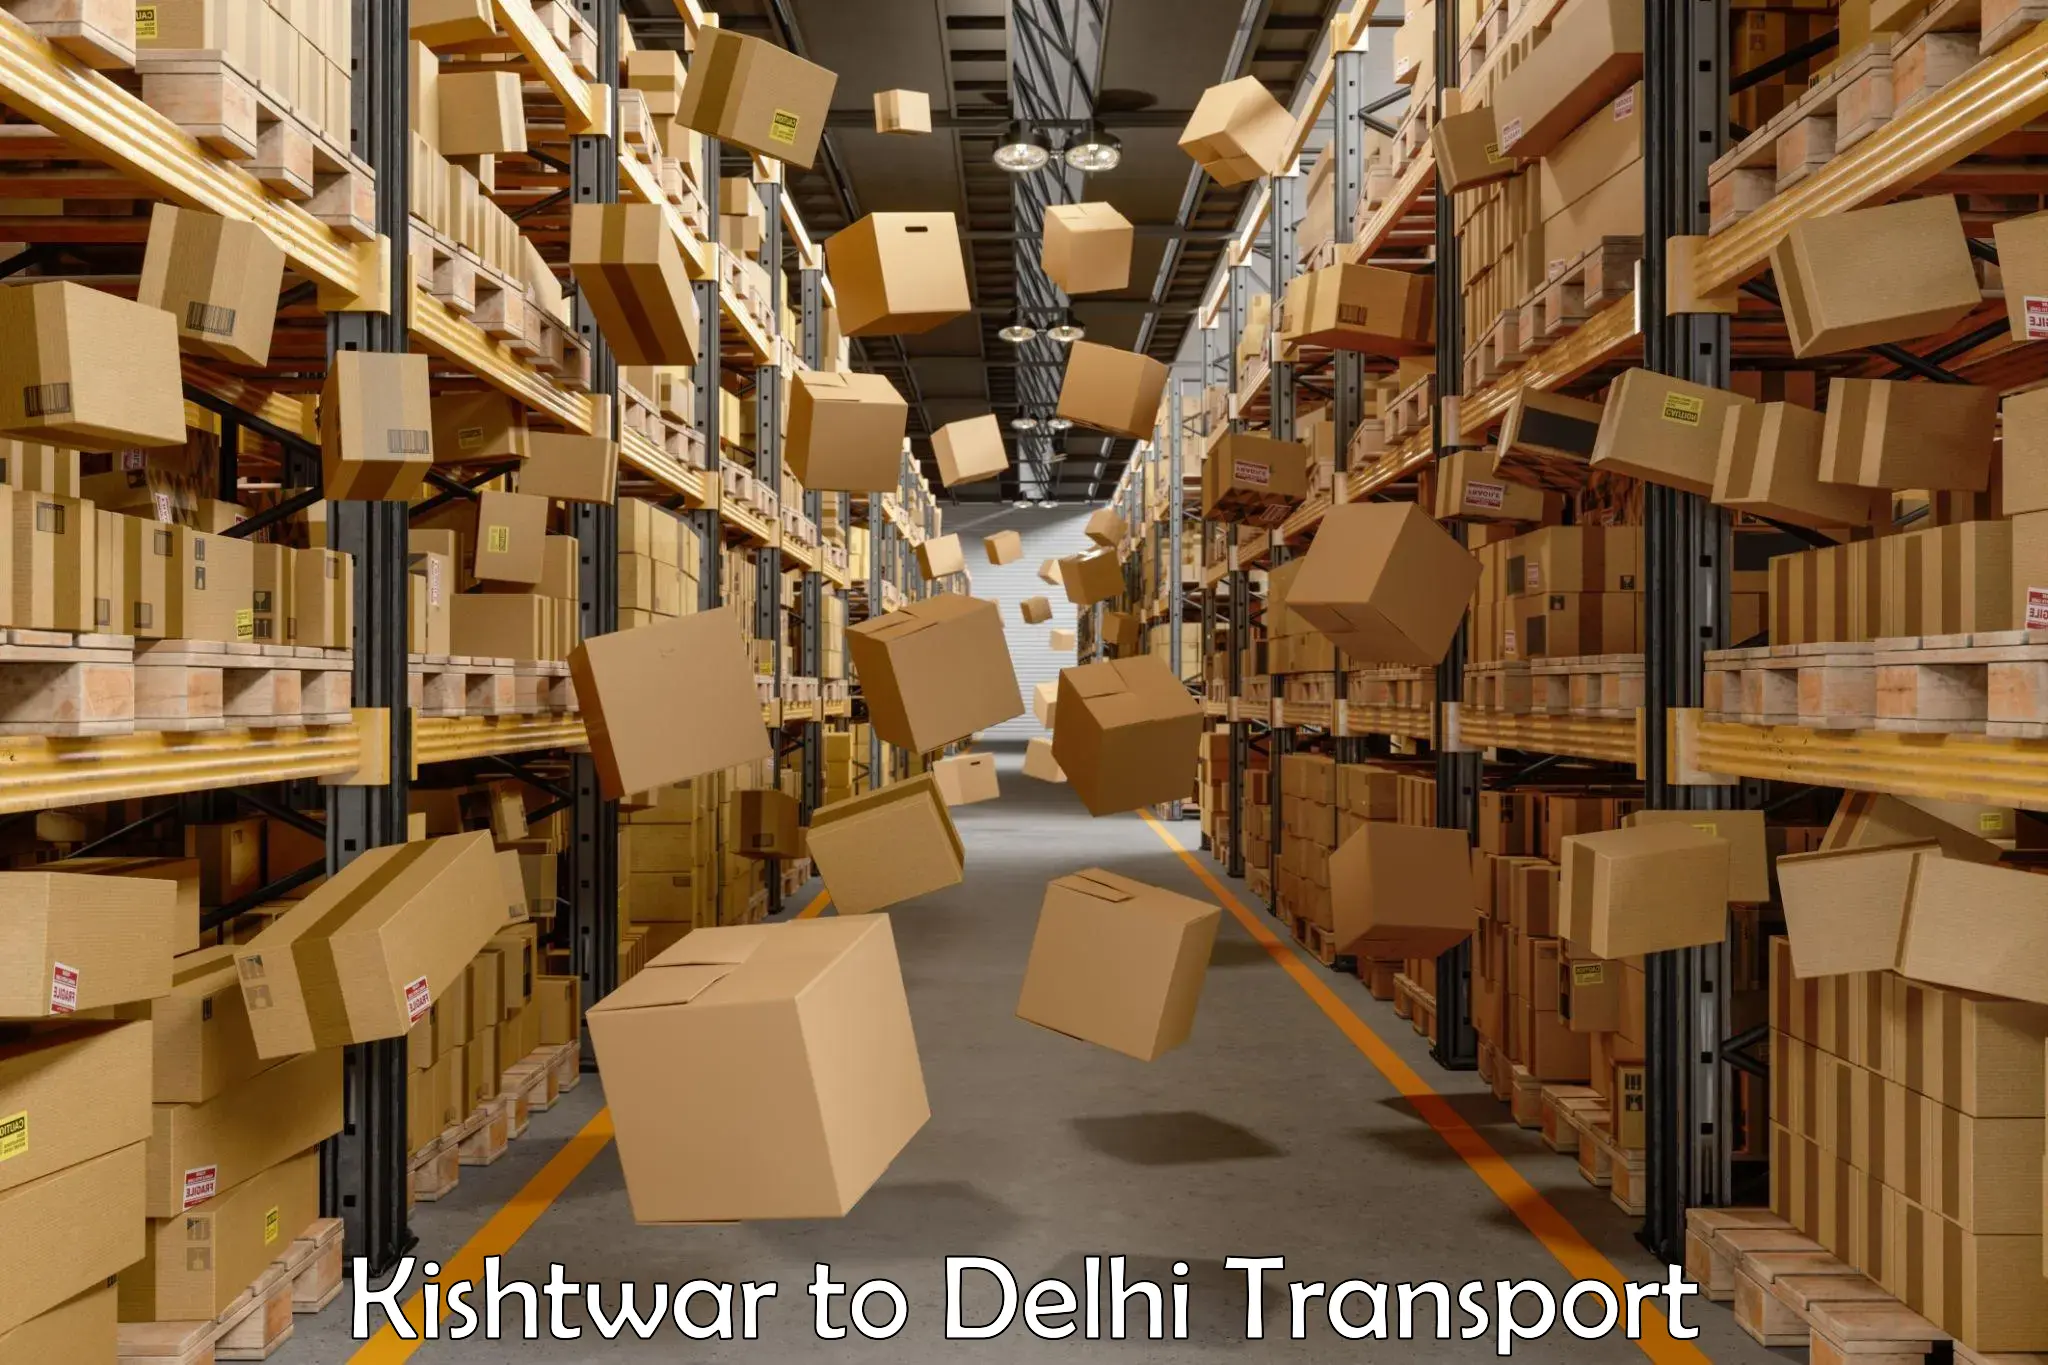 Online transport service Kishtwar to IIT Delhi